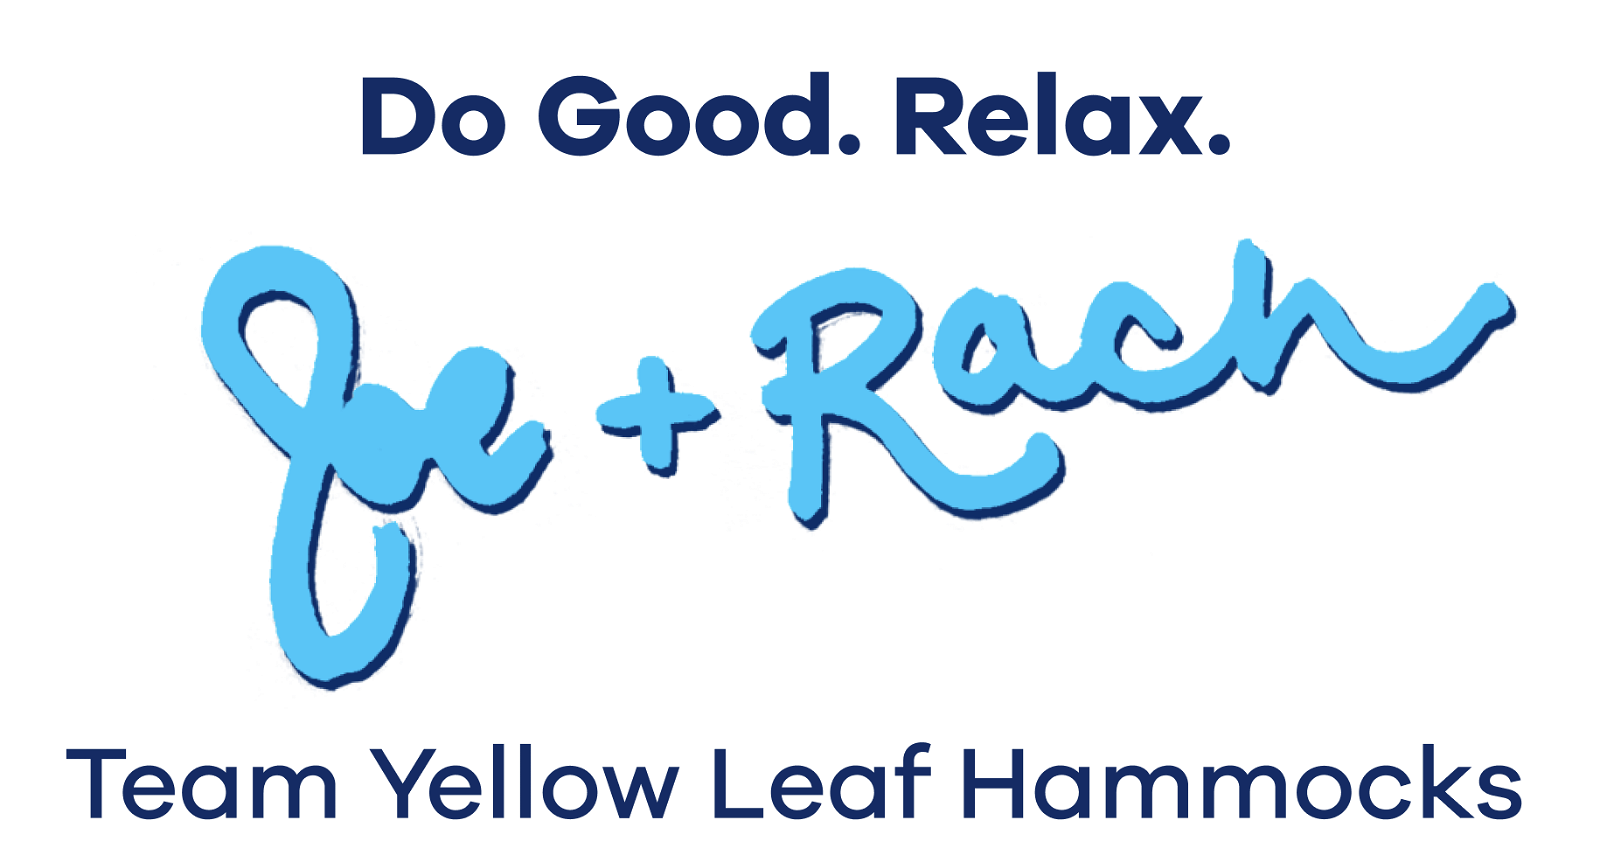 Do Good. Relax. - Joe & Rach